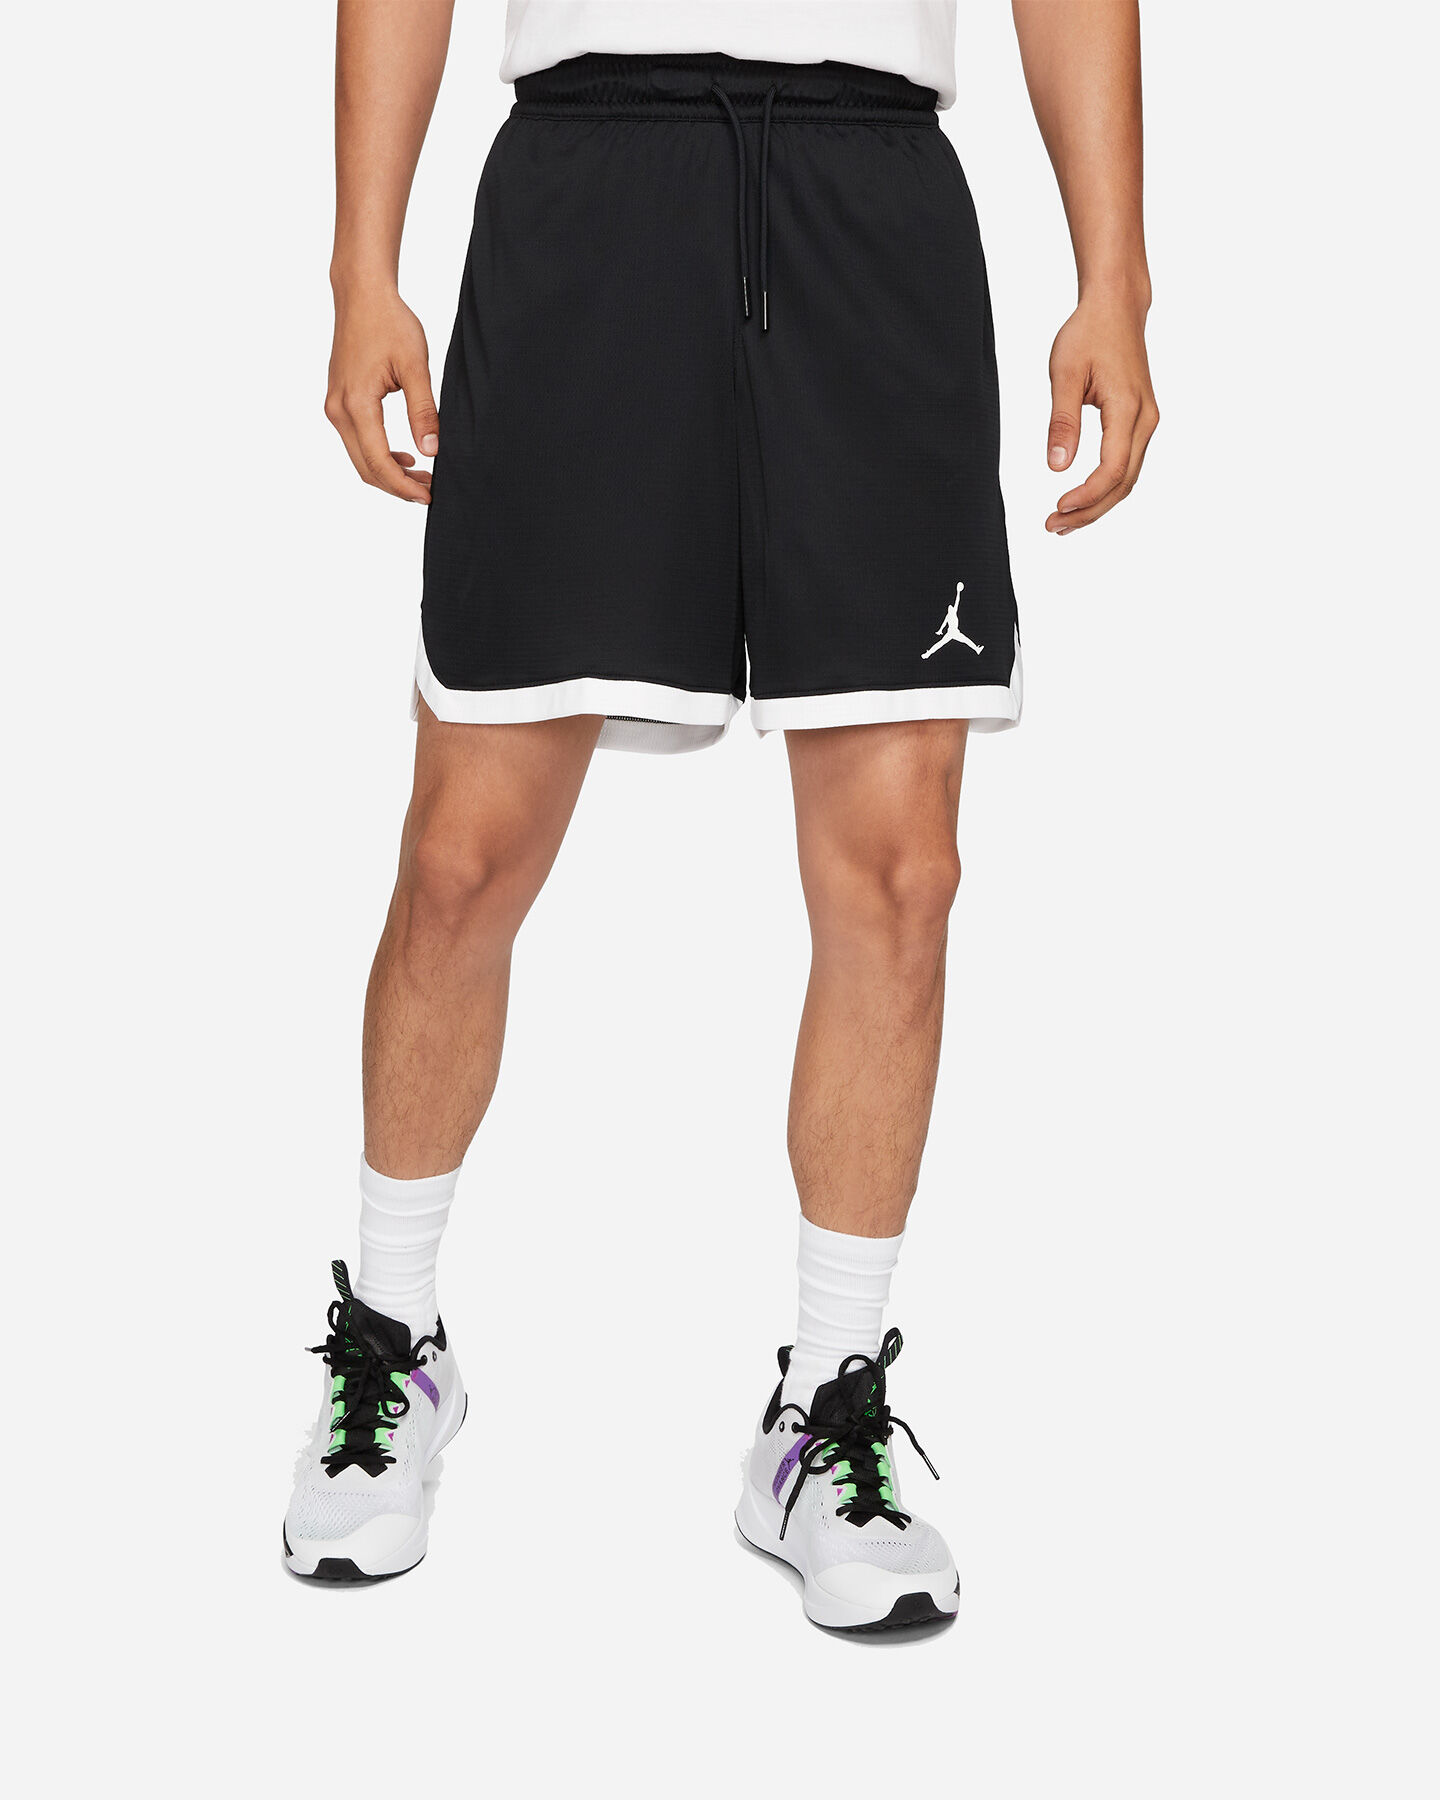 Pantaloncini Basket Nike Jordan Dry Air 